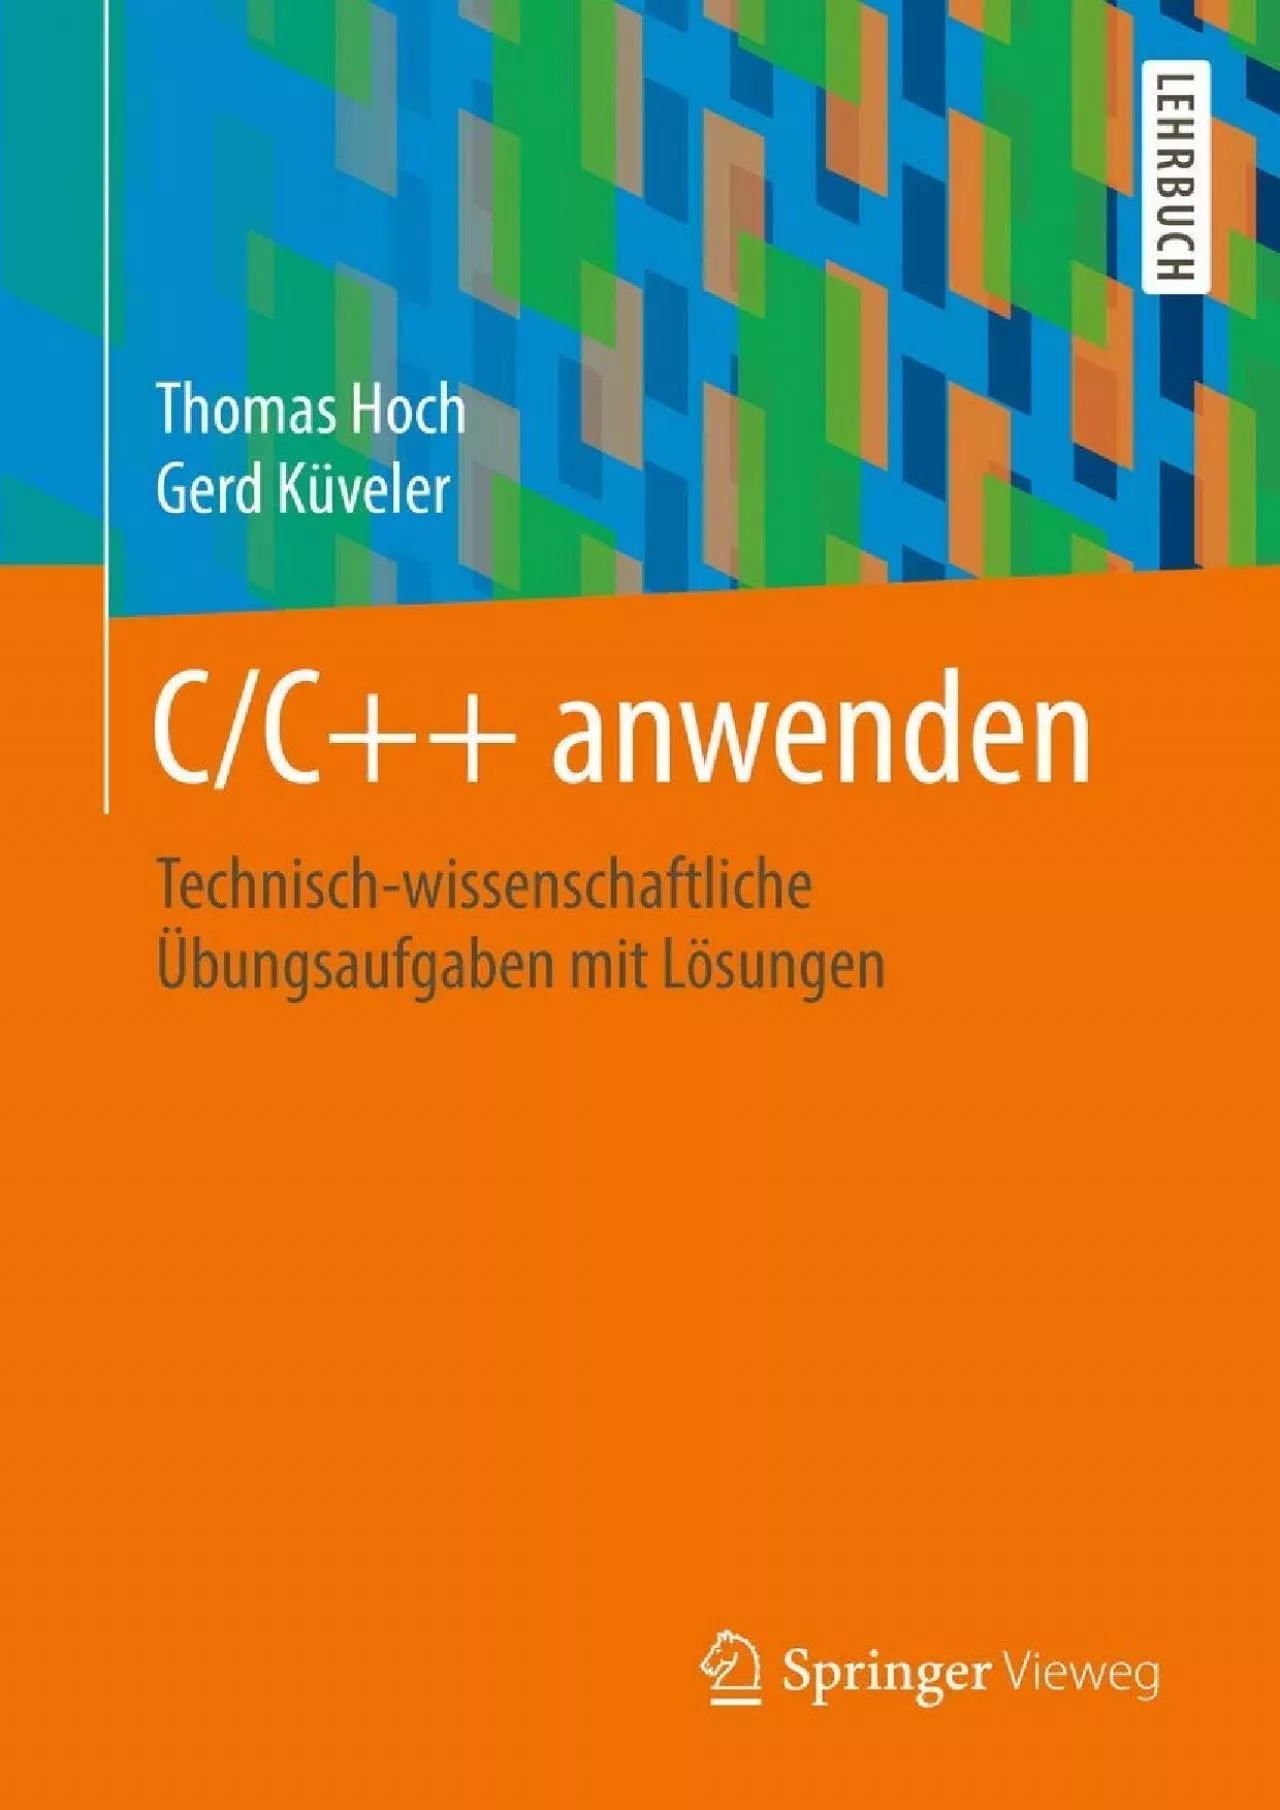 [eBOOK]-C/C++ anwenden: Technisch-wissenschaftliche Übungsaufgaben mit Lösungen (German